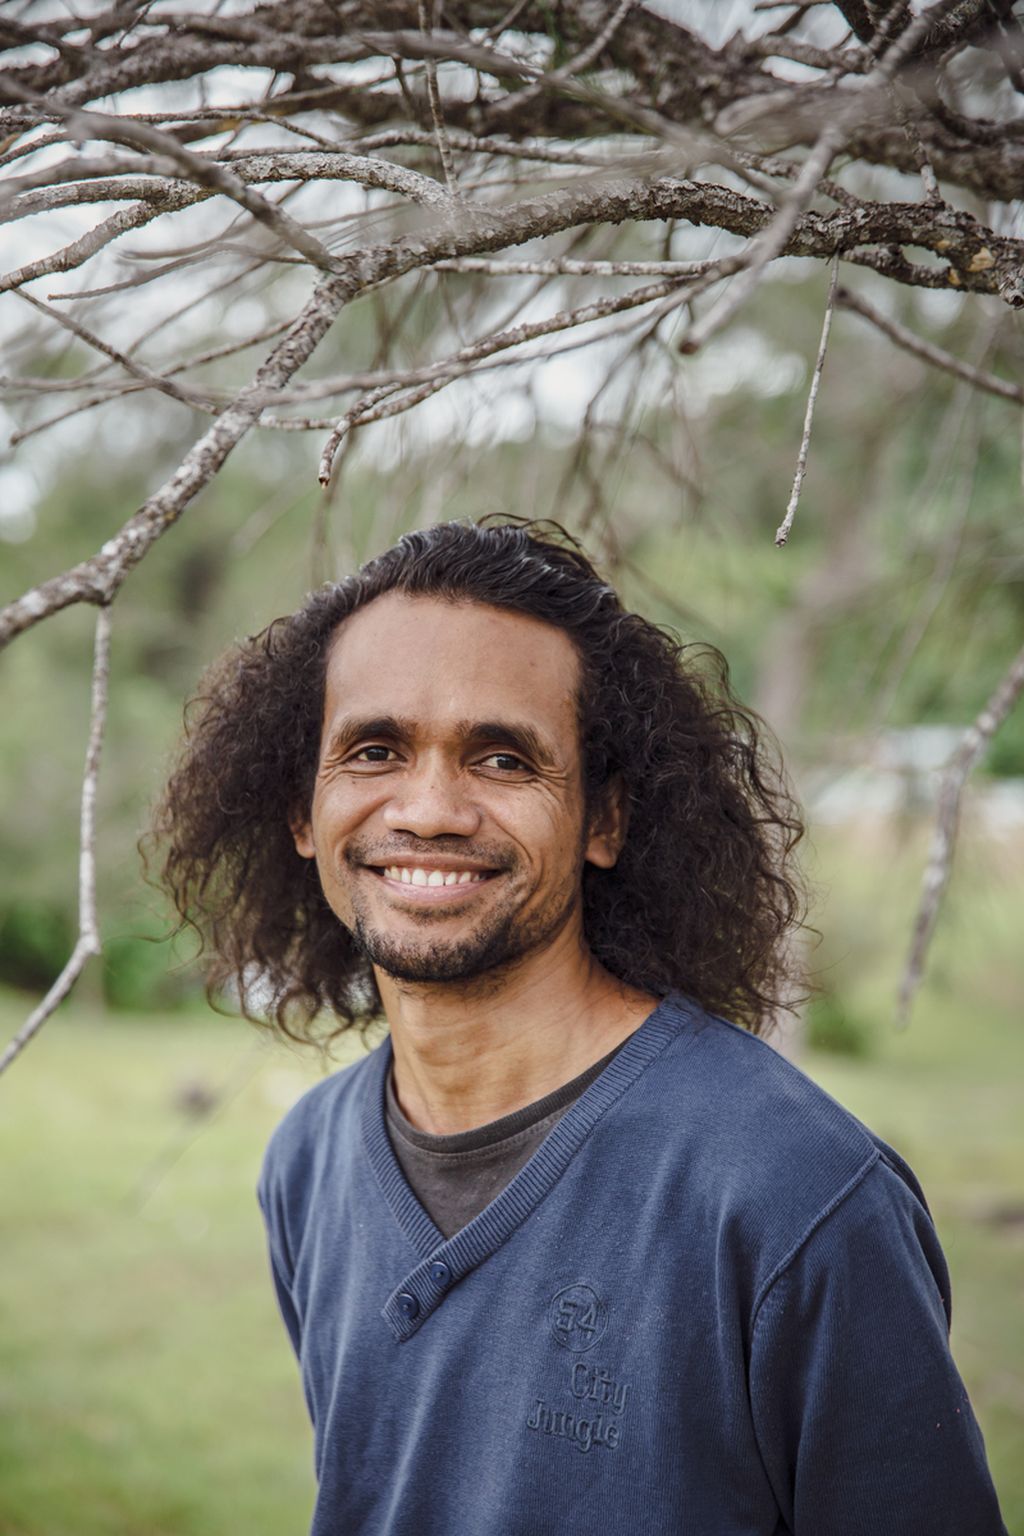 Felix Nesi, sastrawan asal Timor Tengah Utara, Nusa Tenggara Timur. Felix menulis buku <i>Orang-Orang Oetimu</i> (2019) yang mengganjarnya sebagai pemenang dalam Sayembara Menulis Novel oleh Dewan Kesenian Jakarta, 2018.